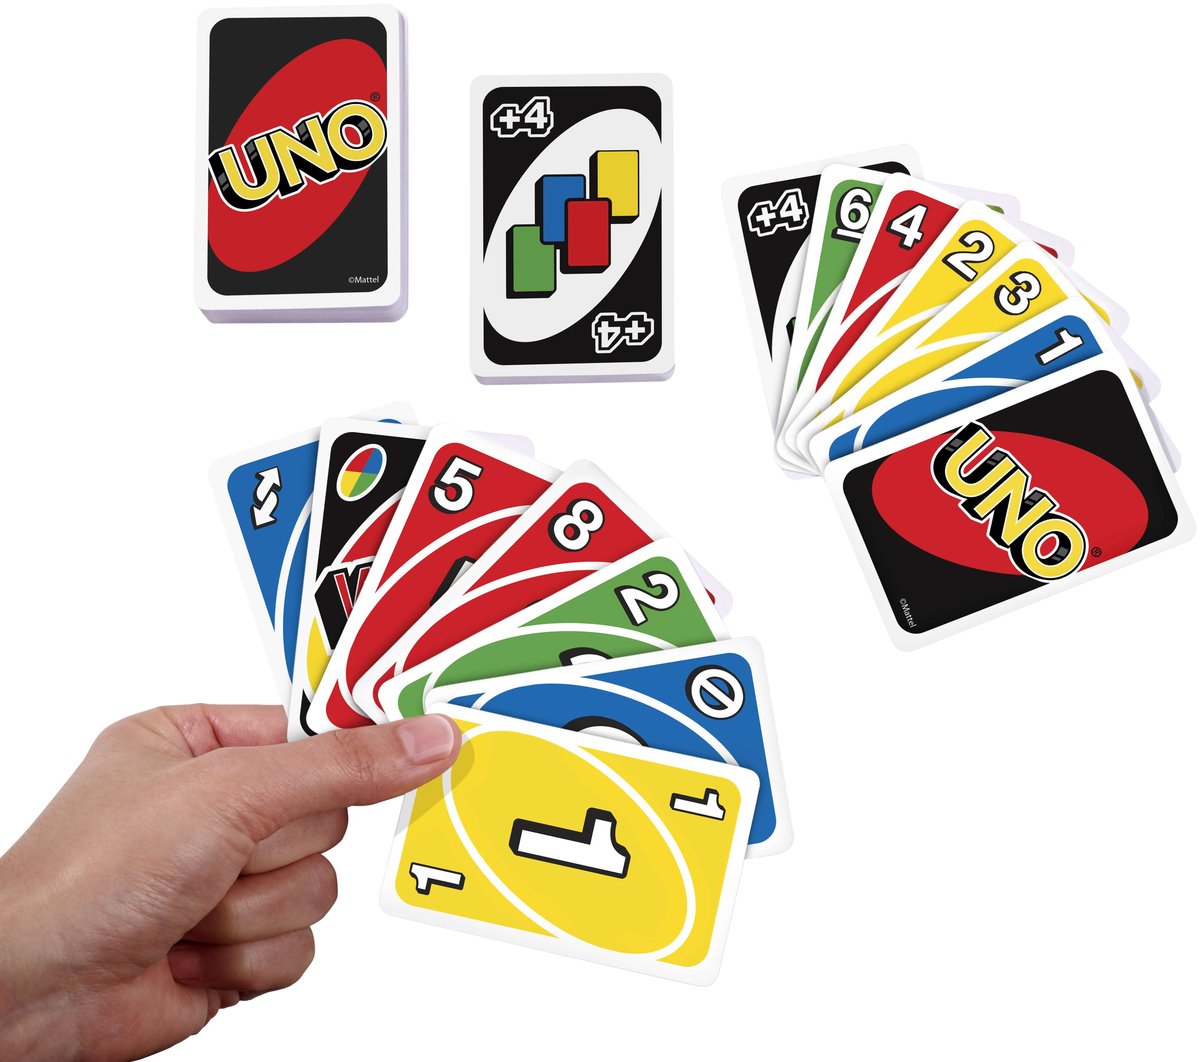 zasady gry uno - ile rozdać kart?